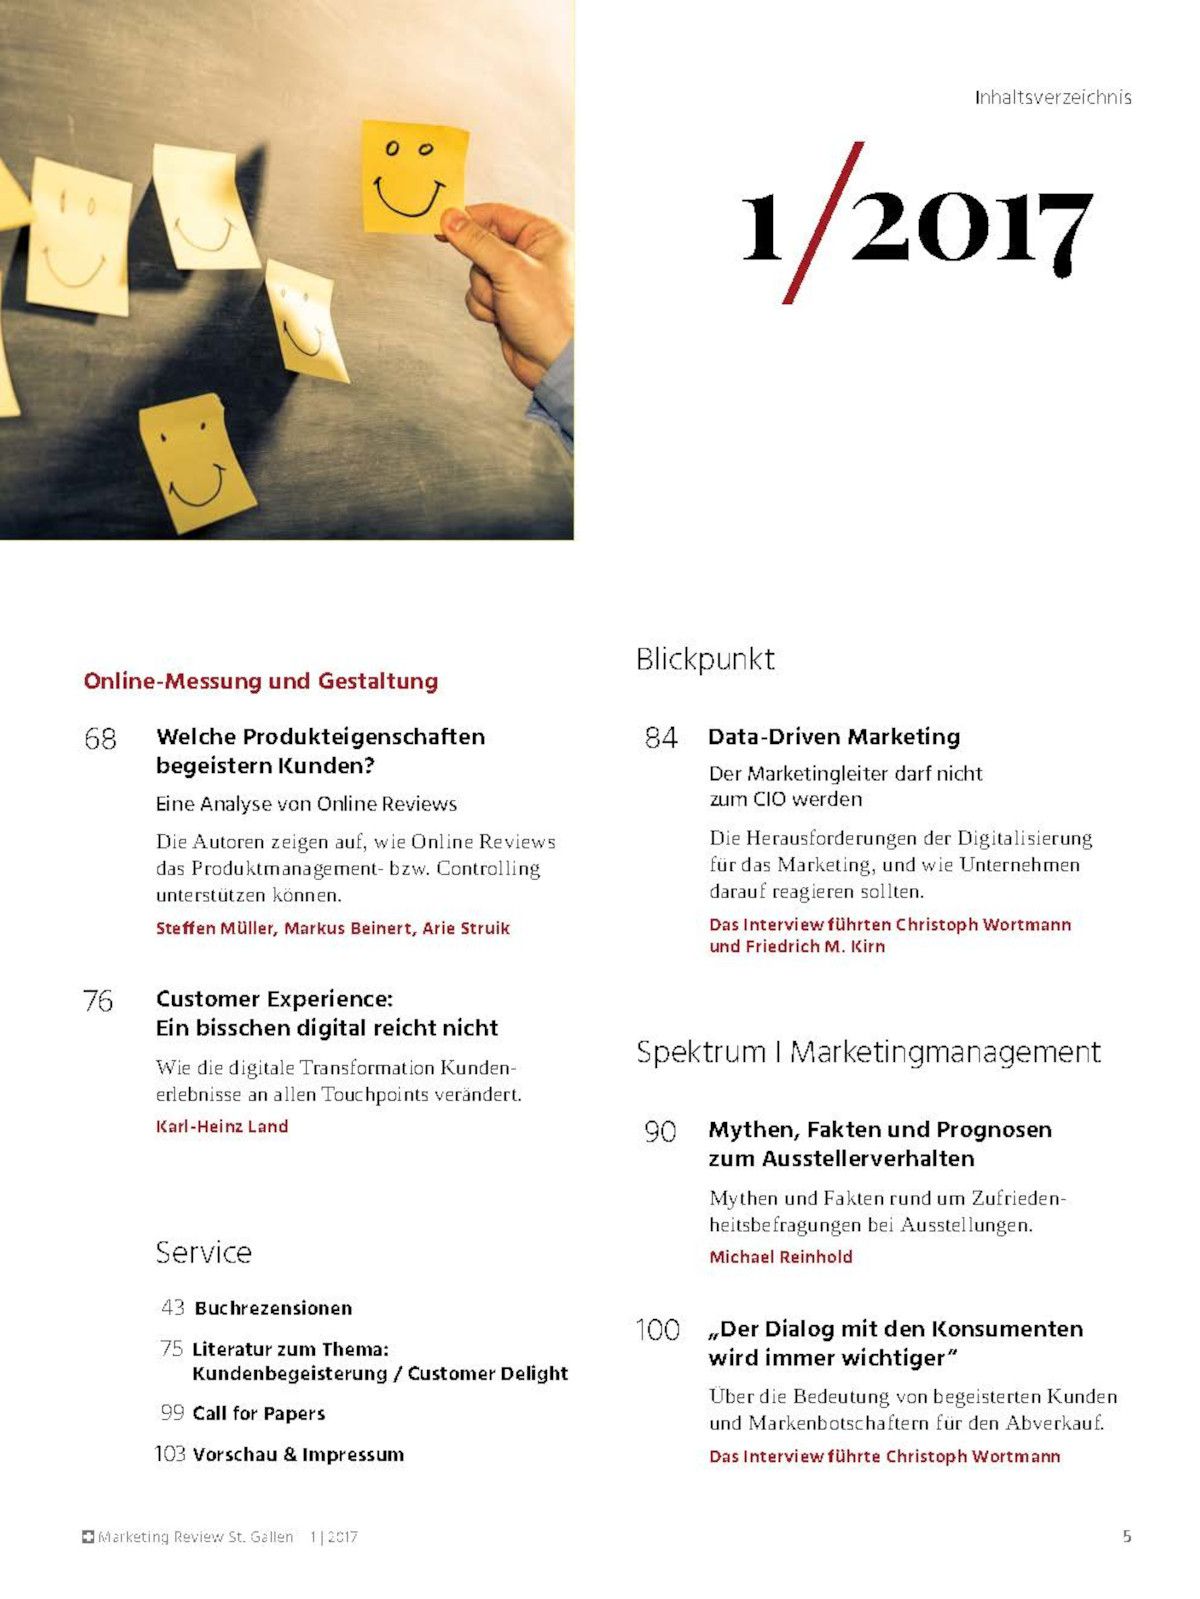 Marketing Review 1-2017 Inhaltsverzeichnis